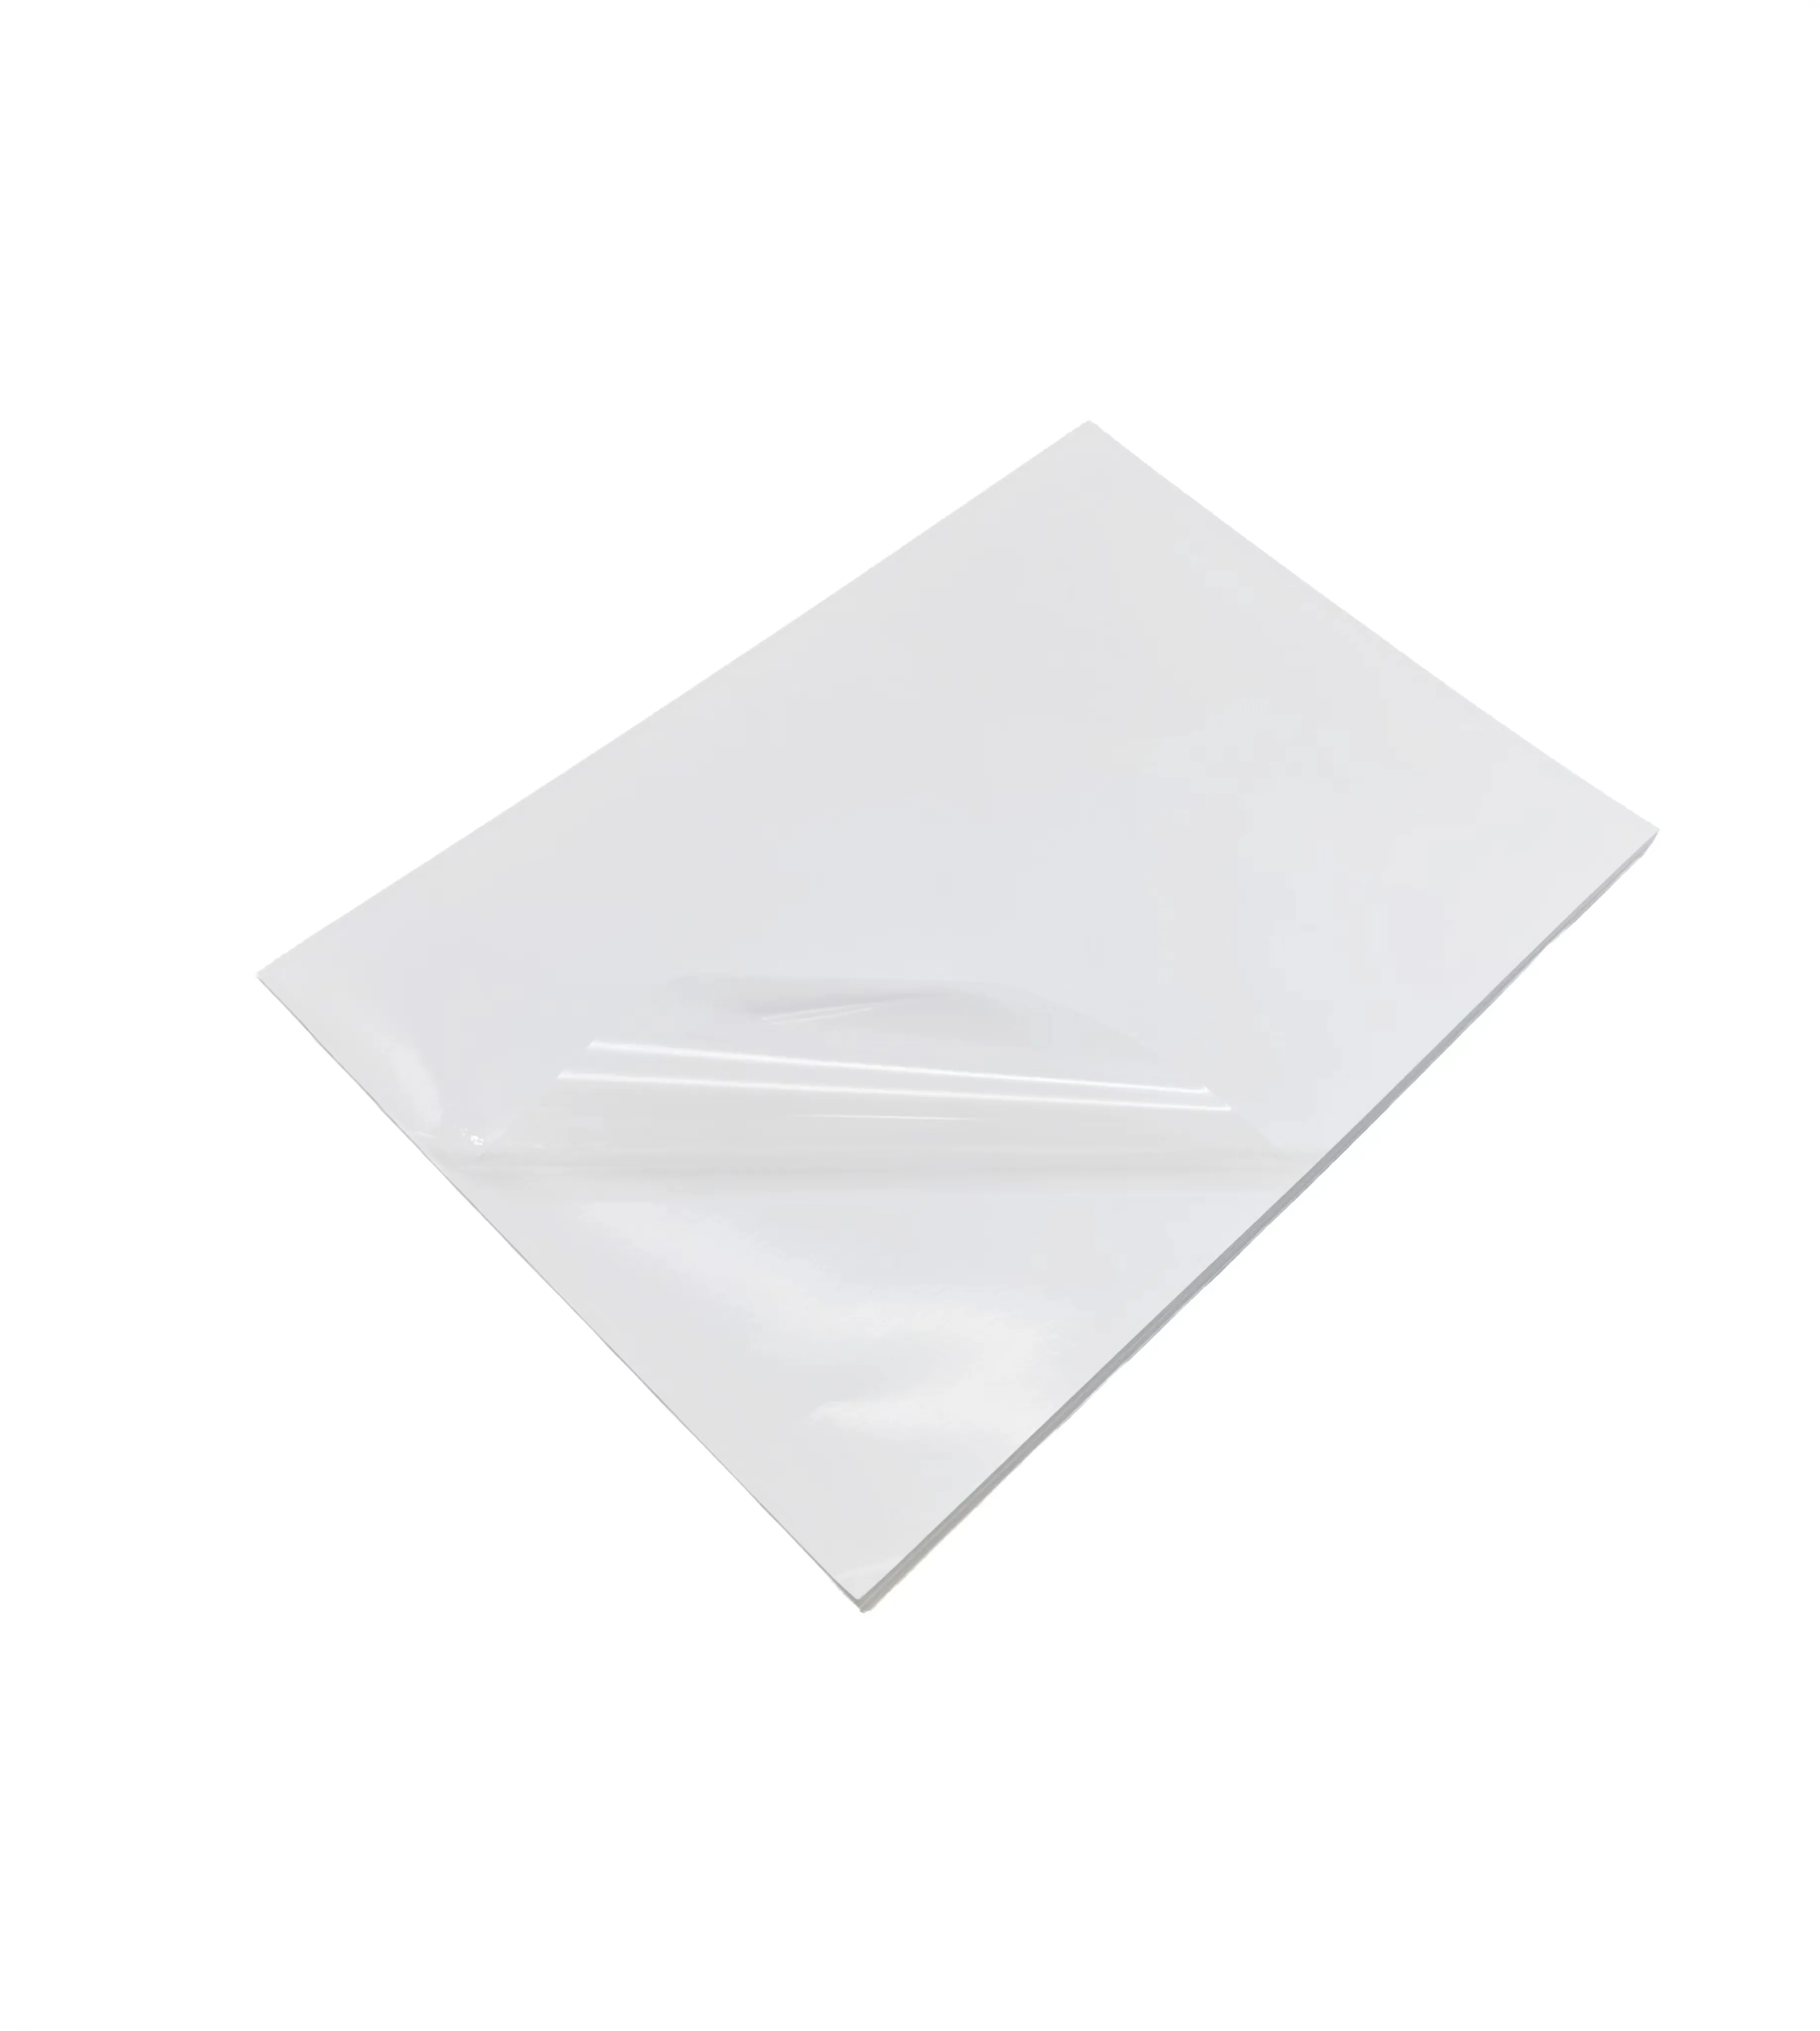 Прозрачная прозрачная бумага A4 47um прозрачная наклейка для домашних животных 50 шт. самоклеящаяся прозрачная виниловая бумага для принтера